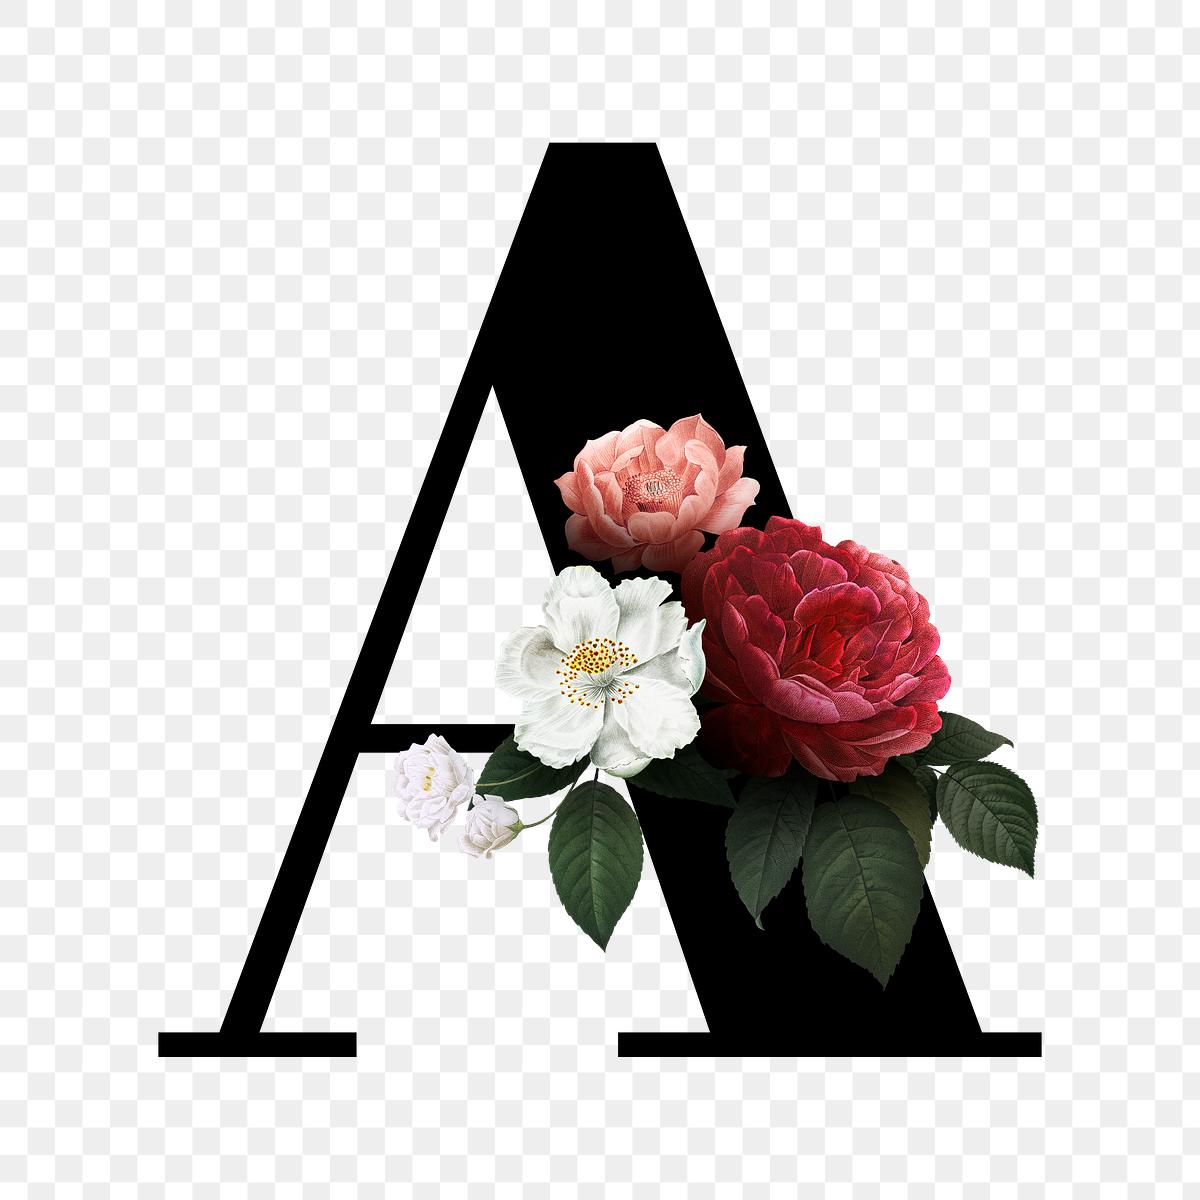 Floral letter A font | Free stock illustration - 582931